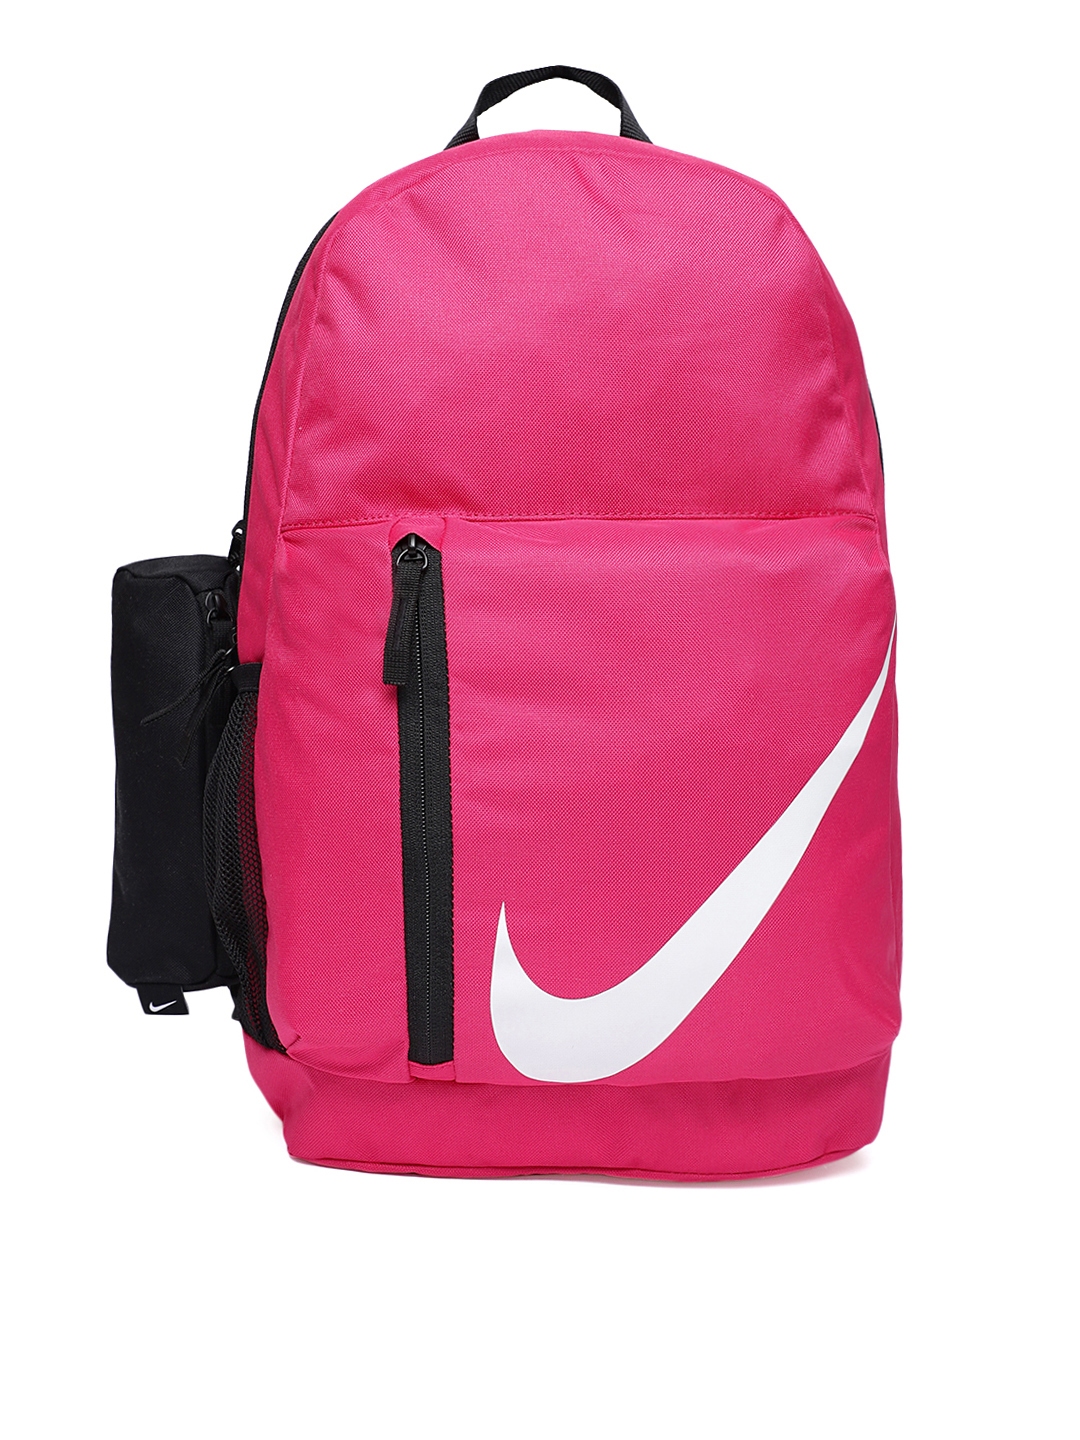 Buy Nike Unisex Pink Brand Logo Backpack - Backpacks for Unisex Kids ...